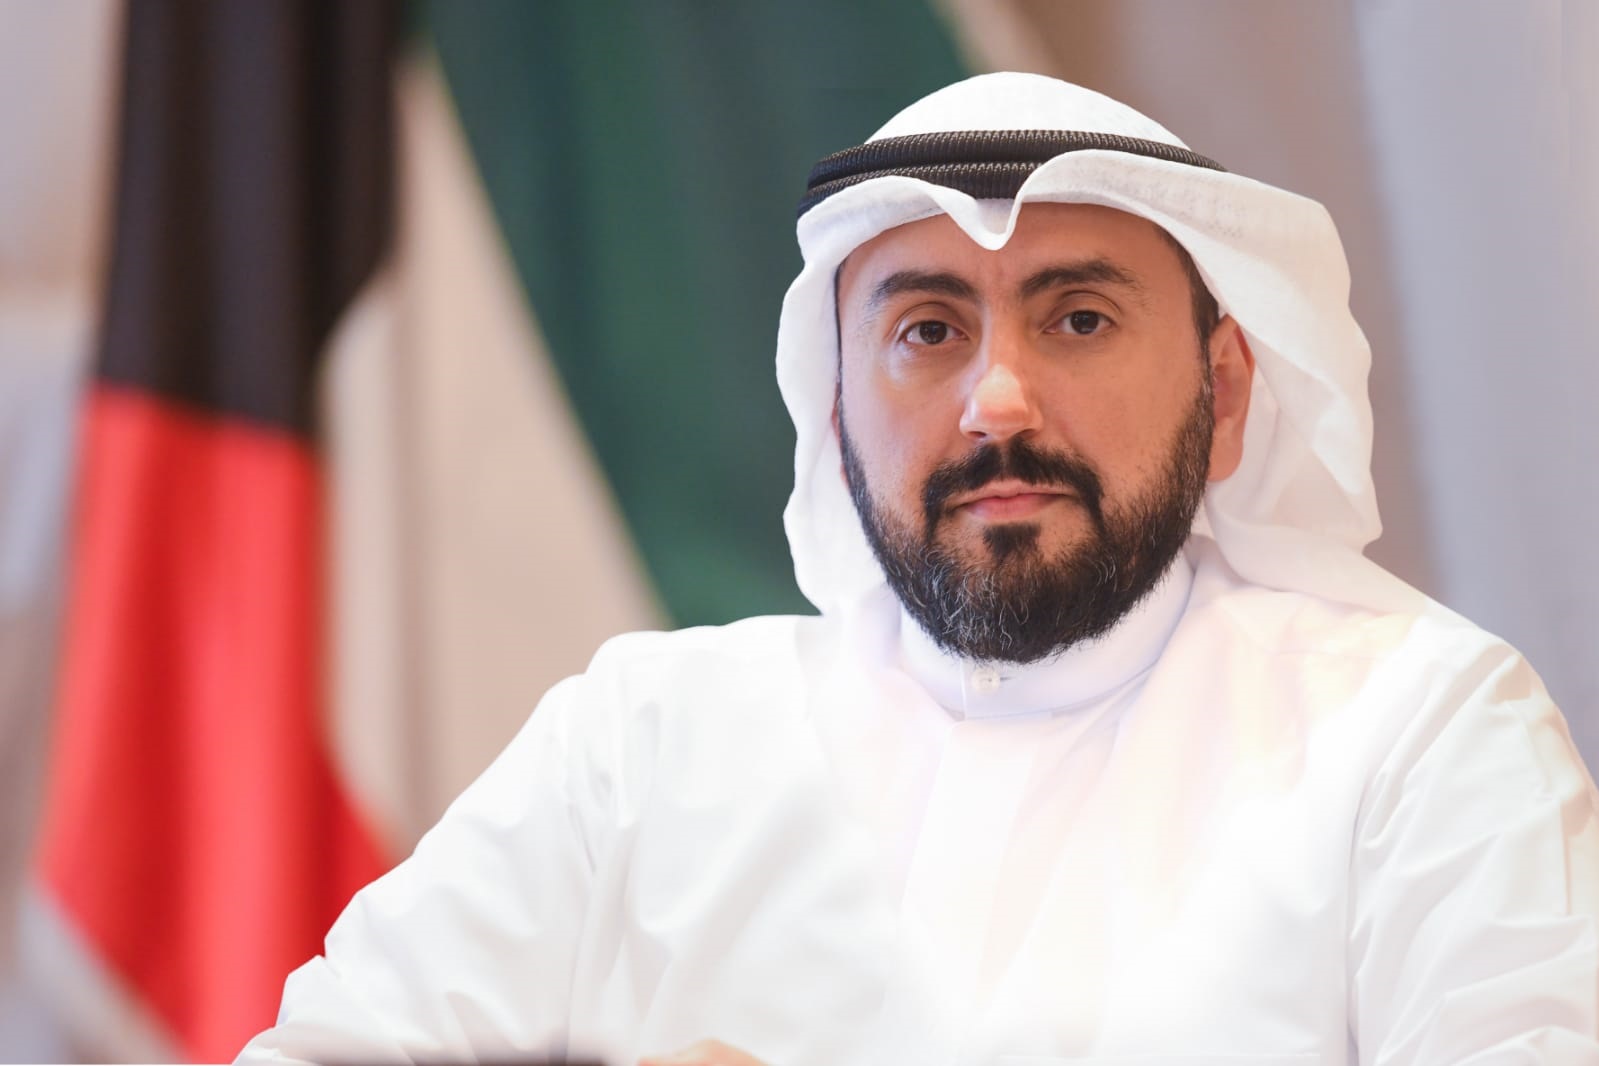 وزير الصحة الكويتي: قادرون على استيعاب المصابين الذين لم تظهر عليهم أعراض (كورونا) وعزلهم بالشكل المناسب                                                                                                                                                  